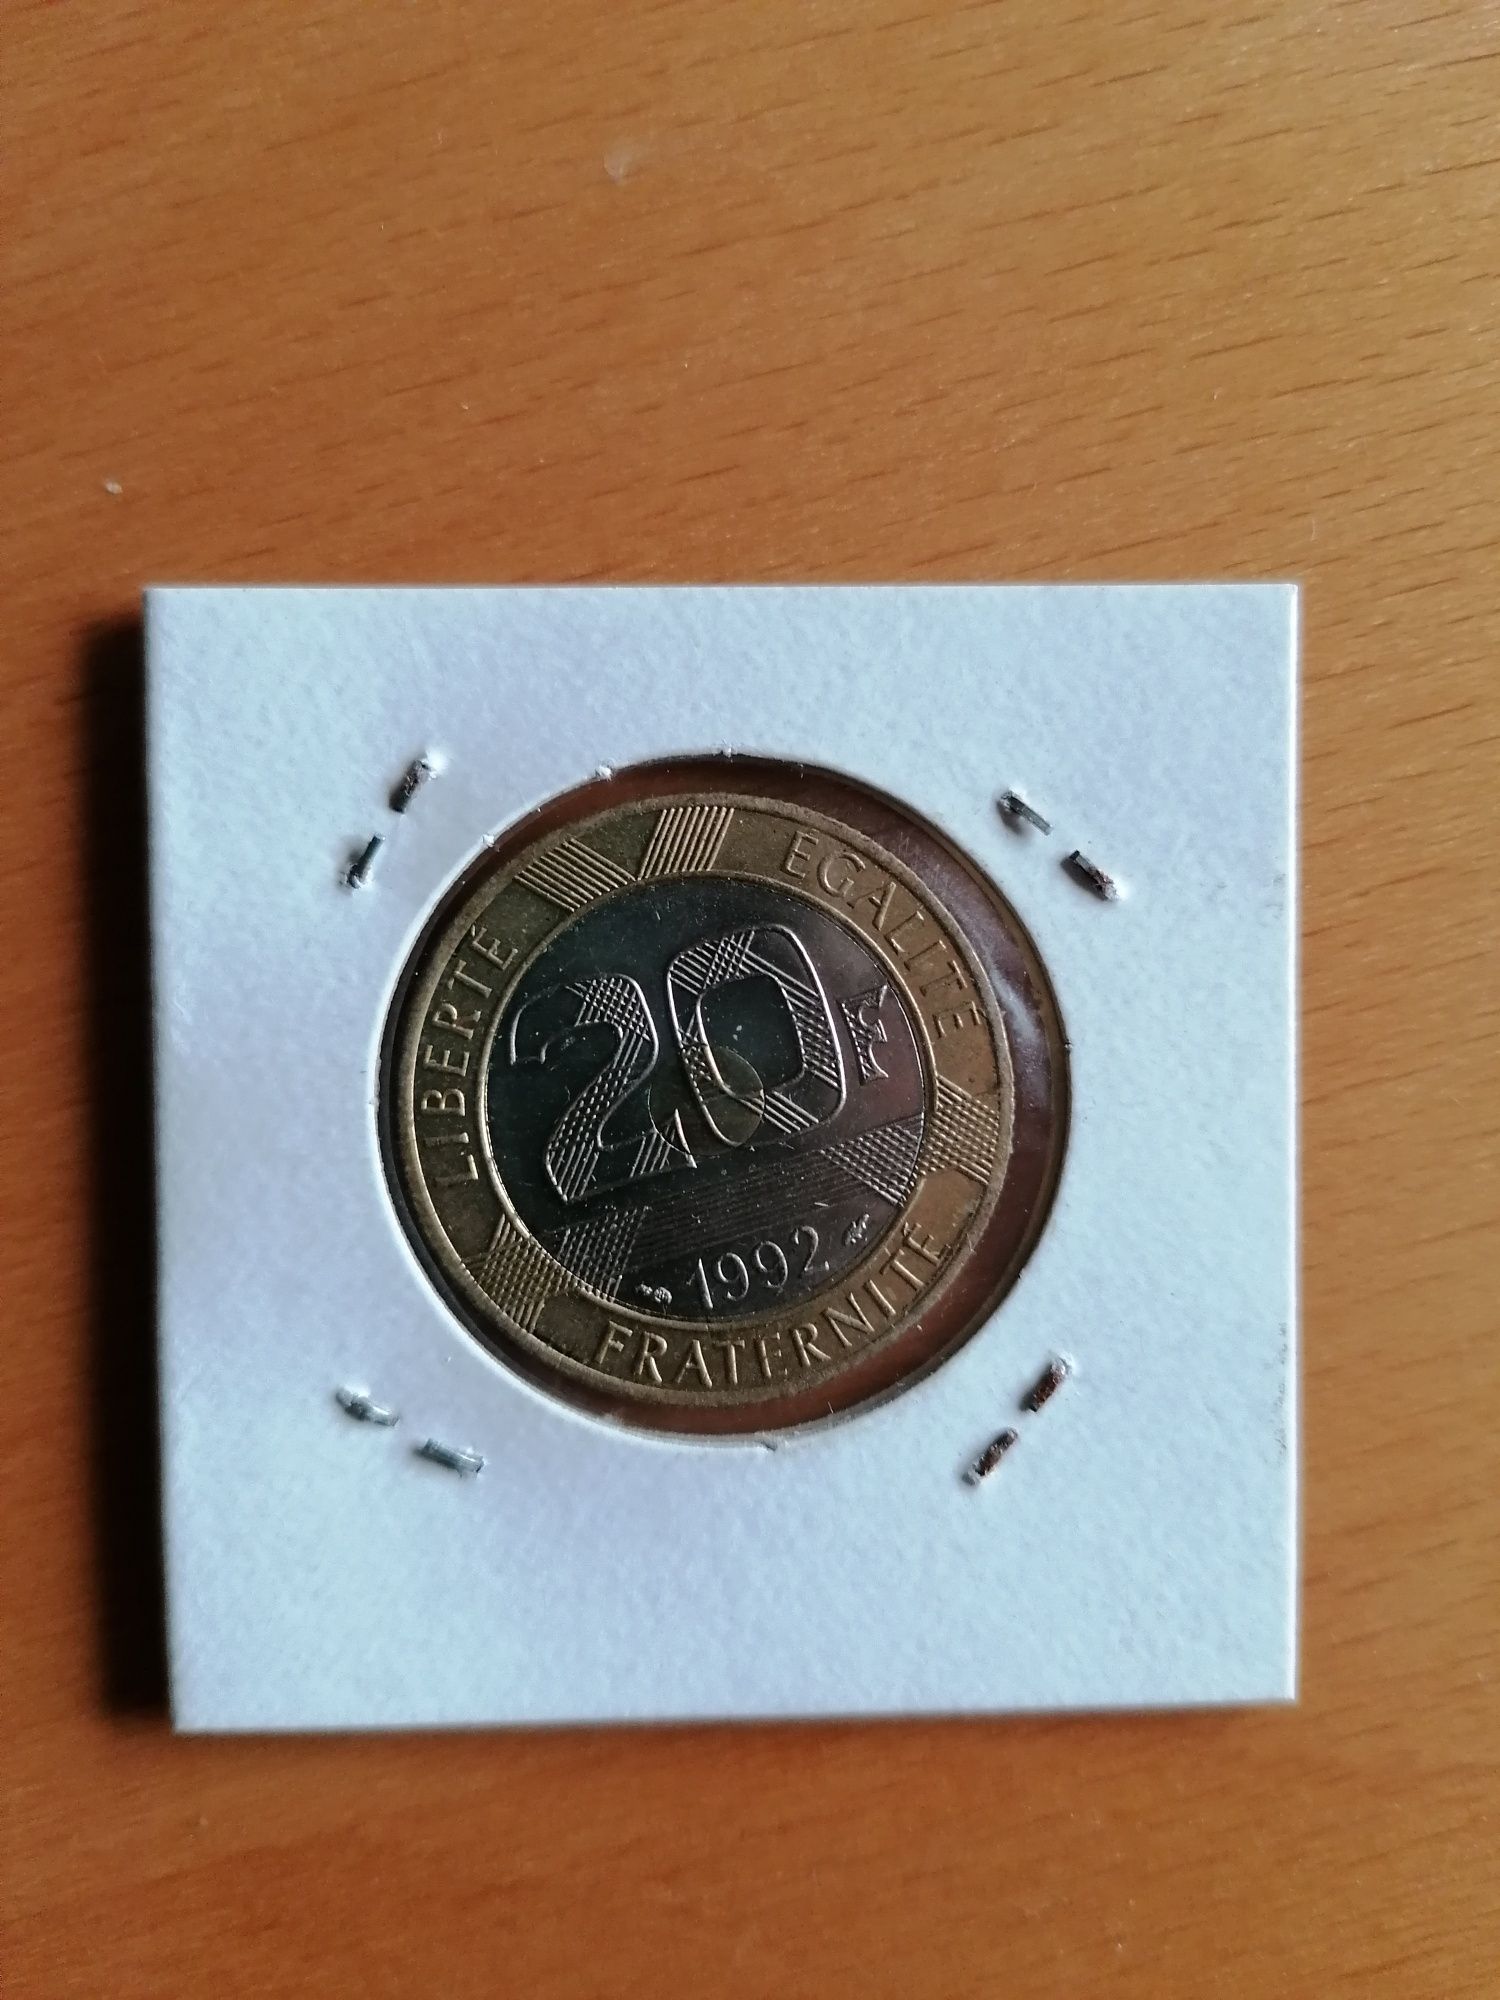 20 francos de 1992